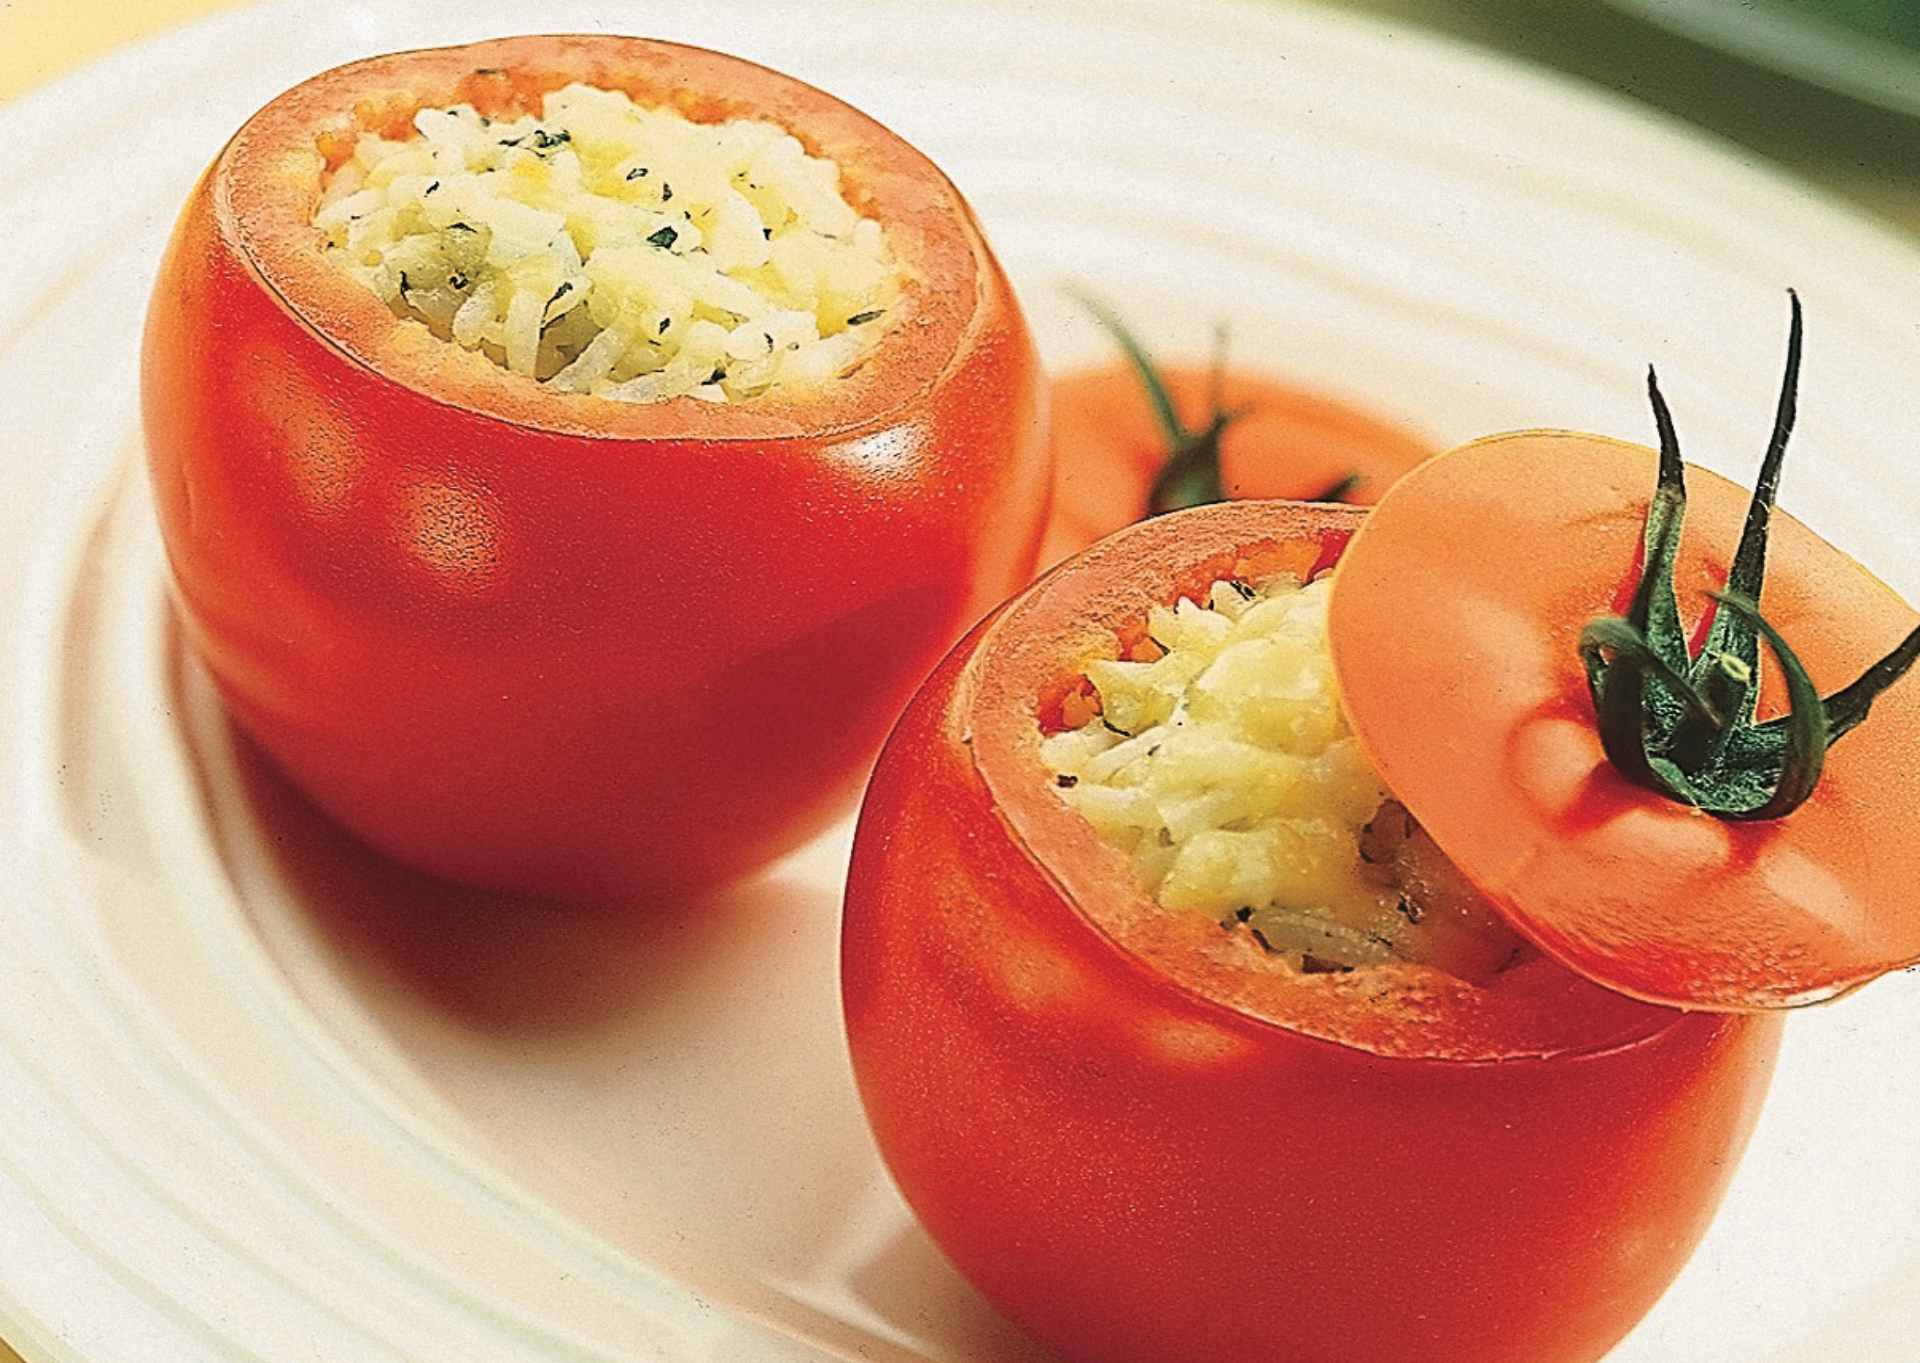 Feliz dia do tomate. Que tal uma receitinha para comemorar?